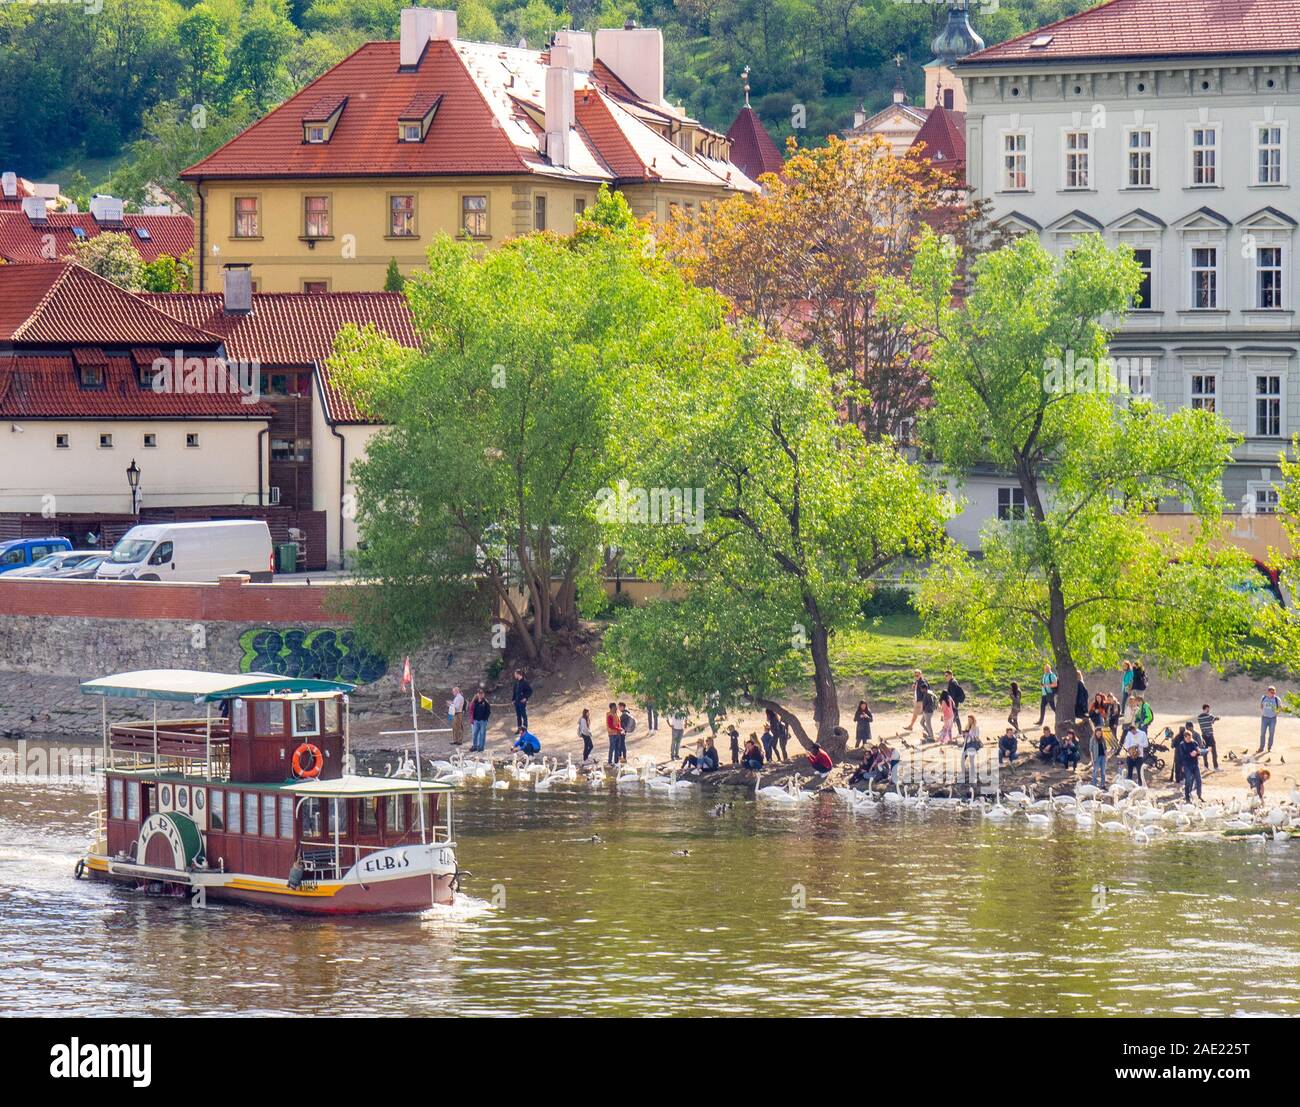 Holzraddampfer die Elbis auf der Moldau Prag Tschechische Republik Stockfoto